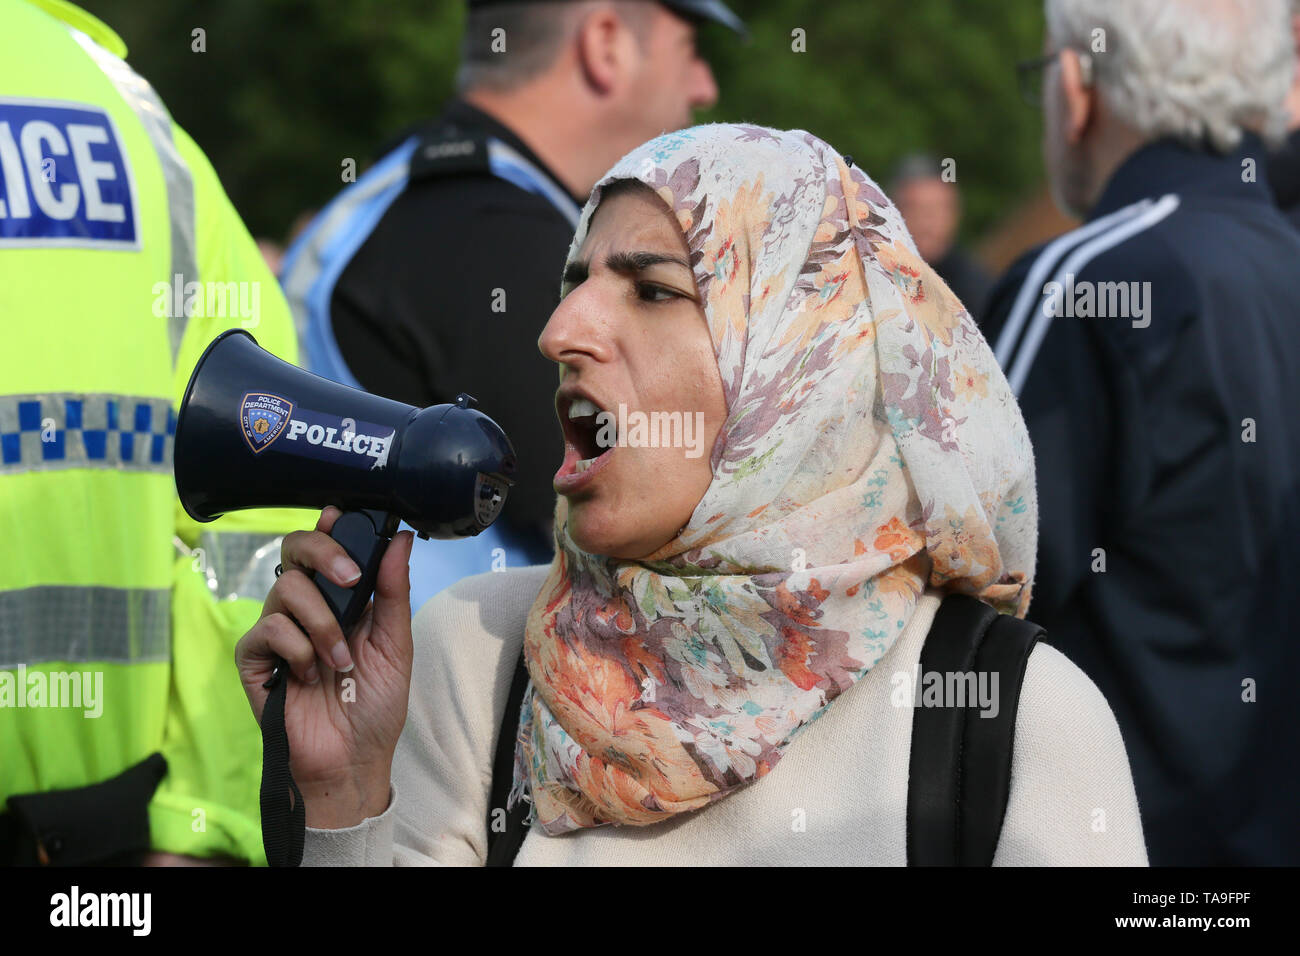 Salford, Royaume-Uni. 22 mai, 2019. Nahella Ashraf et environ 200 militants de racisme dans une contre-manifestation contre Tommy Robinson. Défilé de moka, Broughton, Salford. Crédit : Barbara Cook/Alamy Live News Banque D'Images